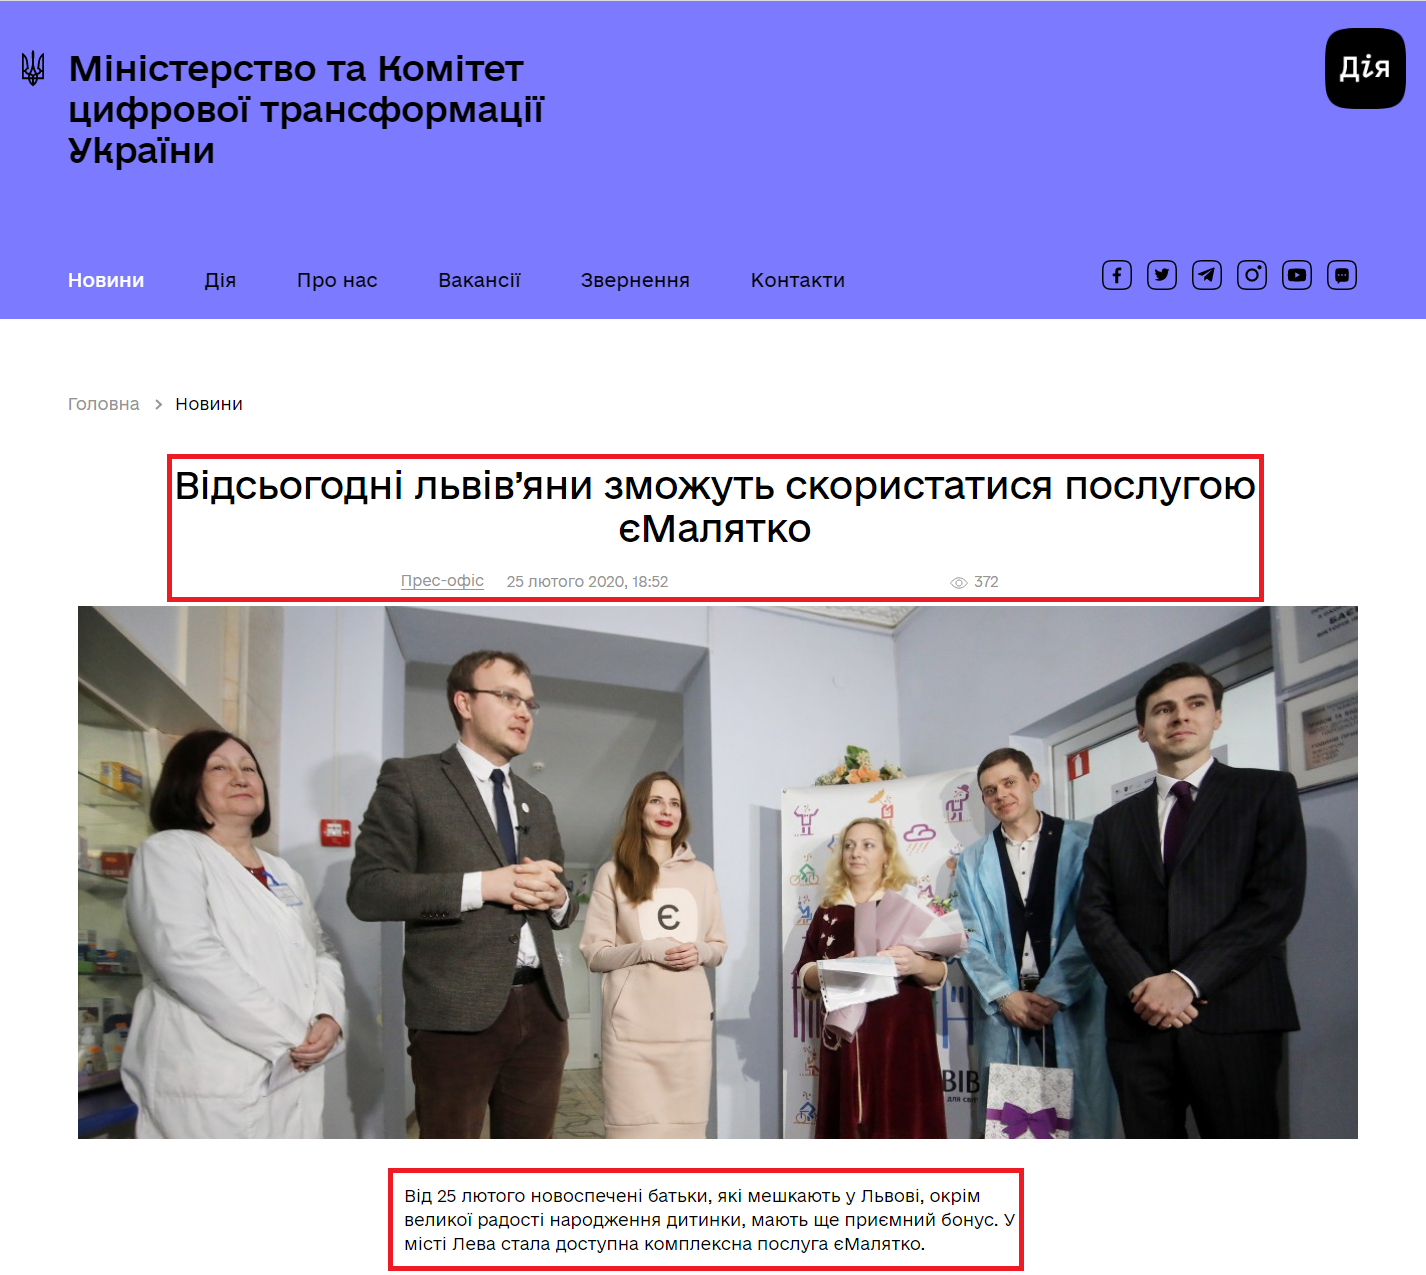 https://thedigital.gov.ua/news/vidsogodni-lvivyani-zmozhut-skoristatisya-poslugoyu-emalyatko